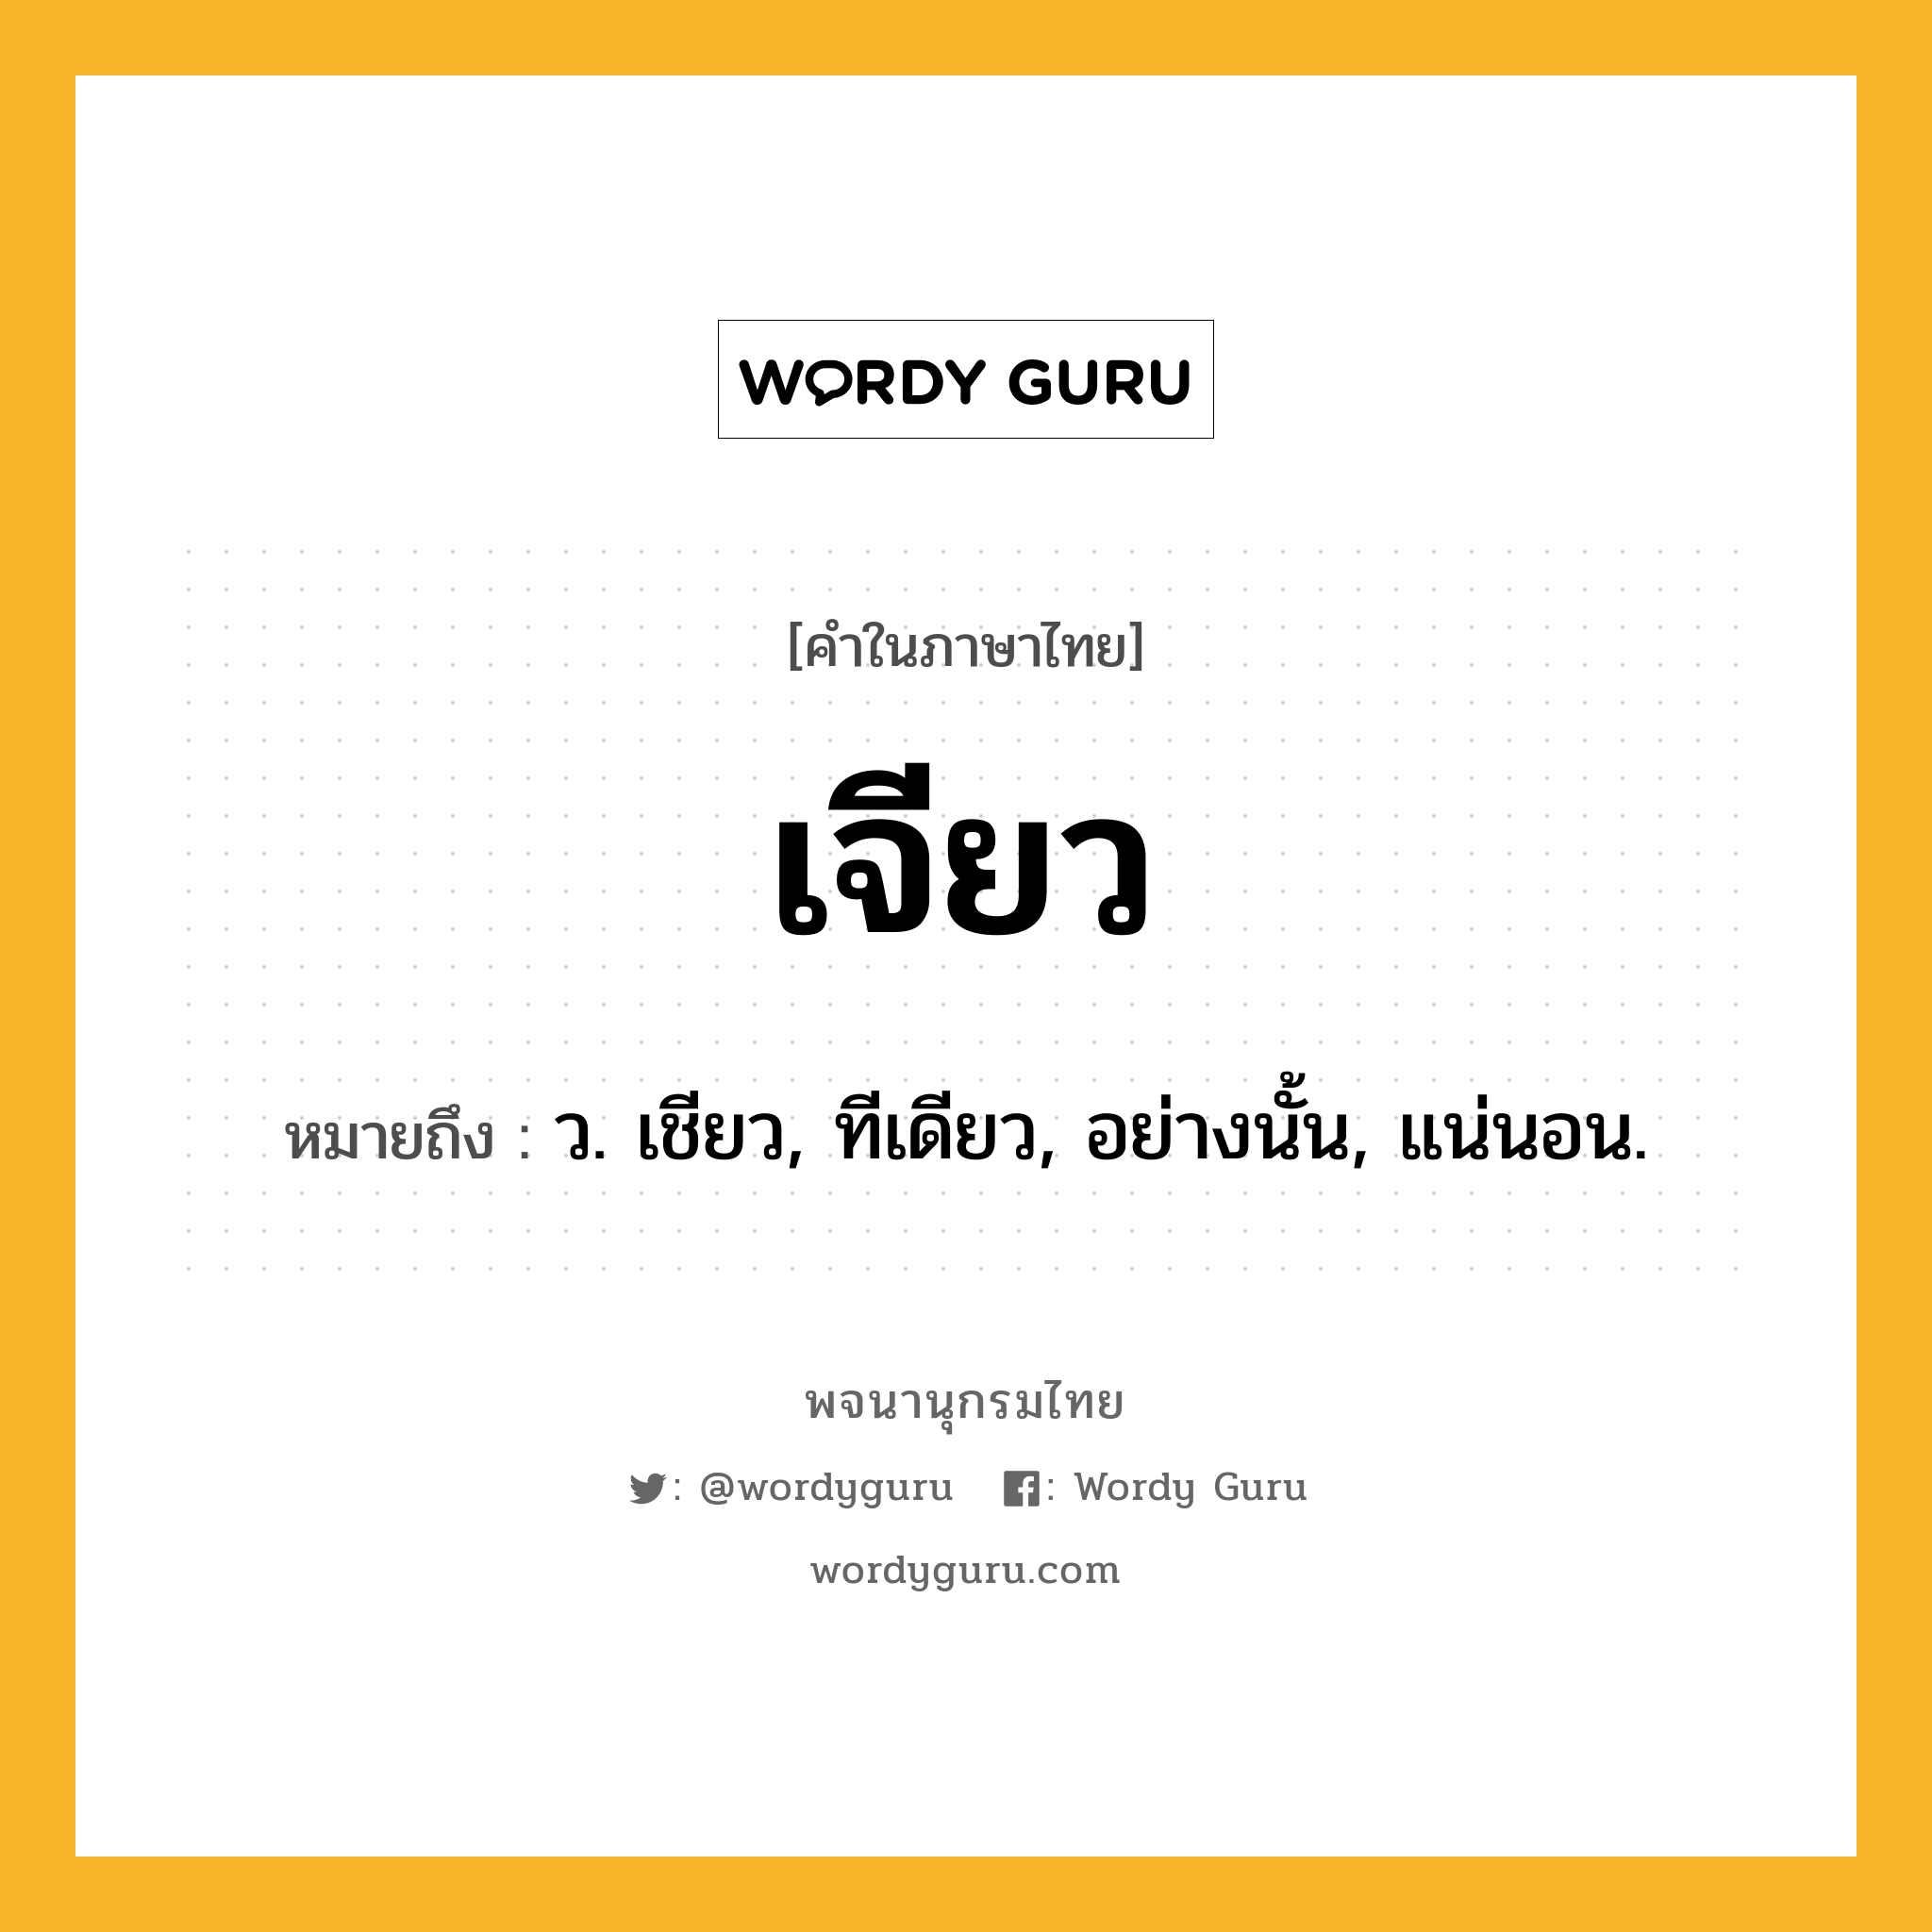 เจียว ความหมาย หมายถึงอะไร?, คำในภาษาไทย เจียว หมายถึง ว. เชียว, ทีเดียว, อย่างนั้น, แน่นอน.